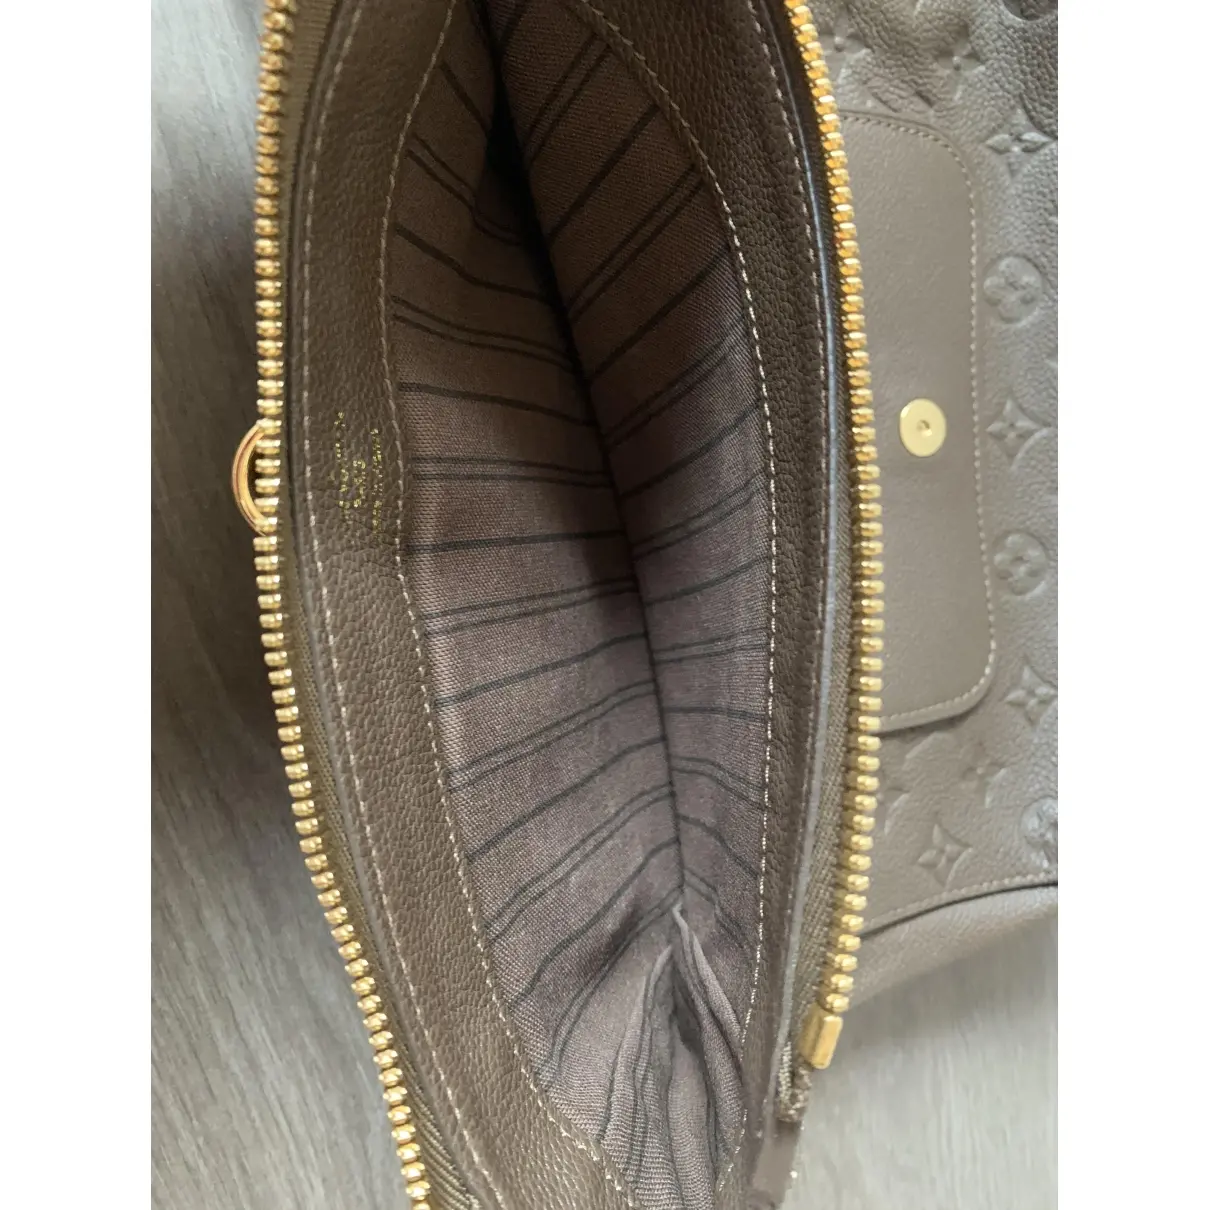 Pétillante leather clutch bag Louis Vuitton